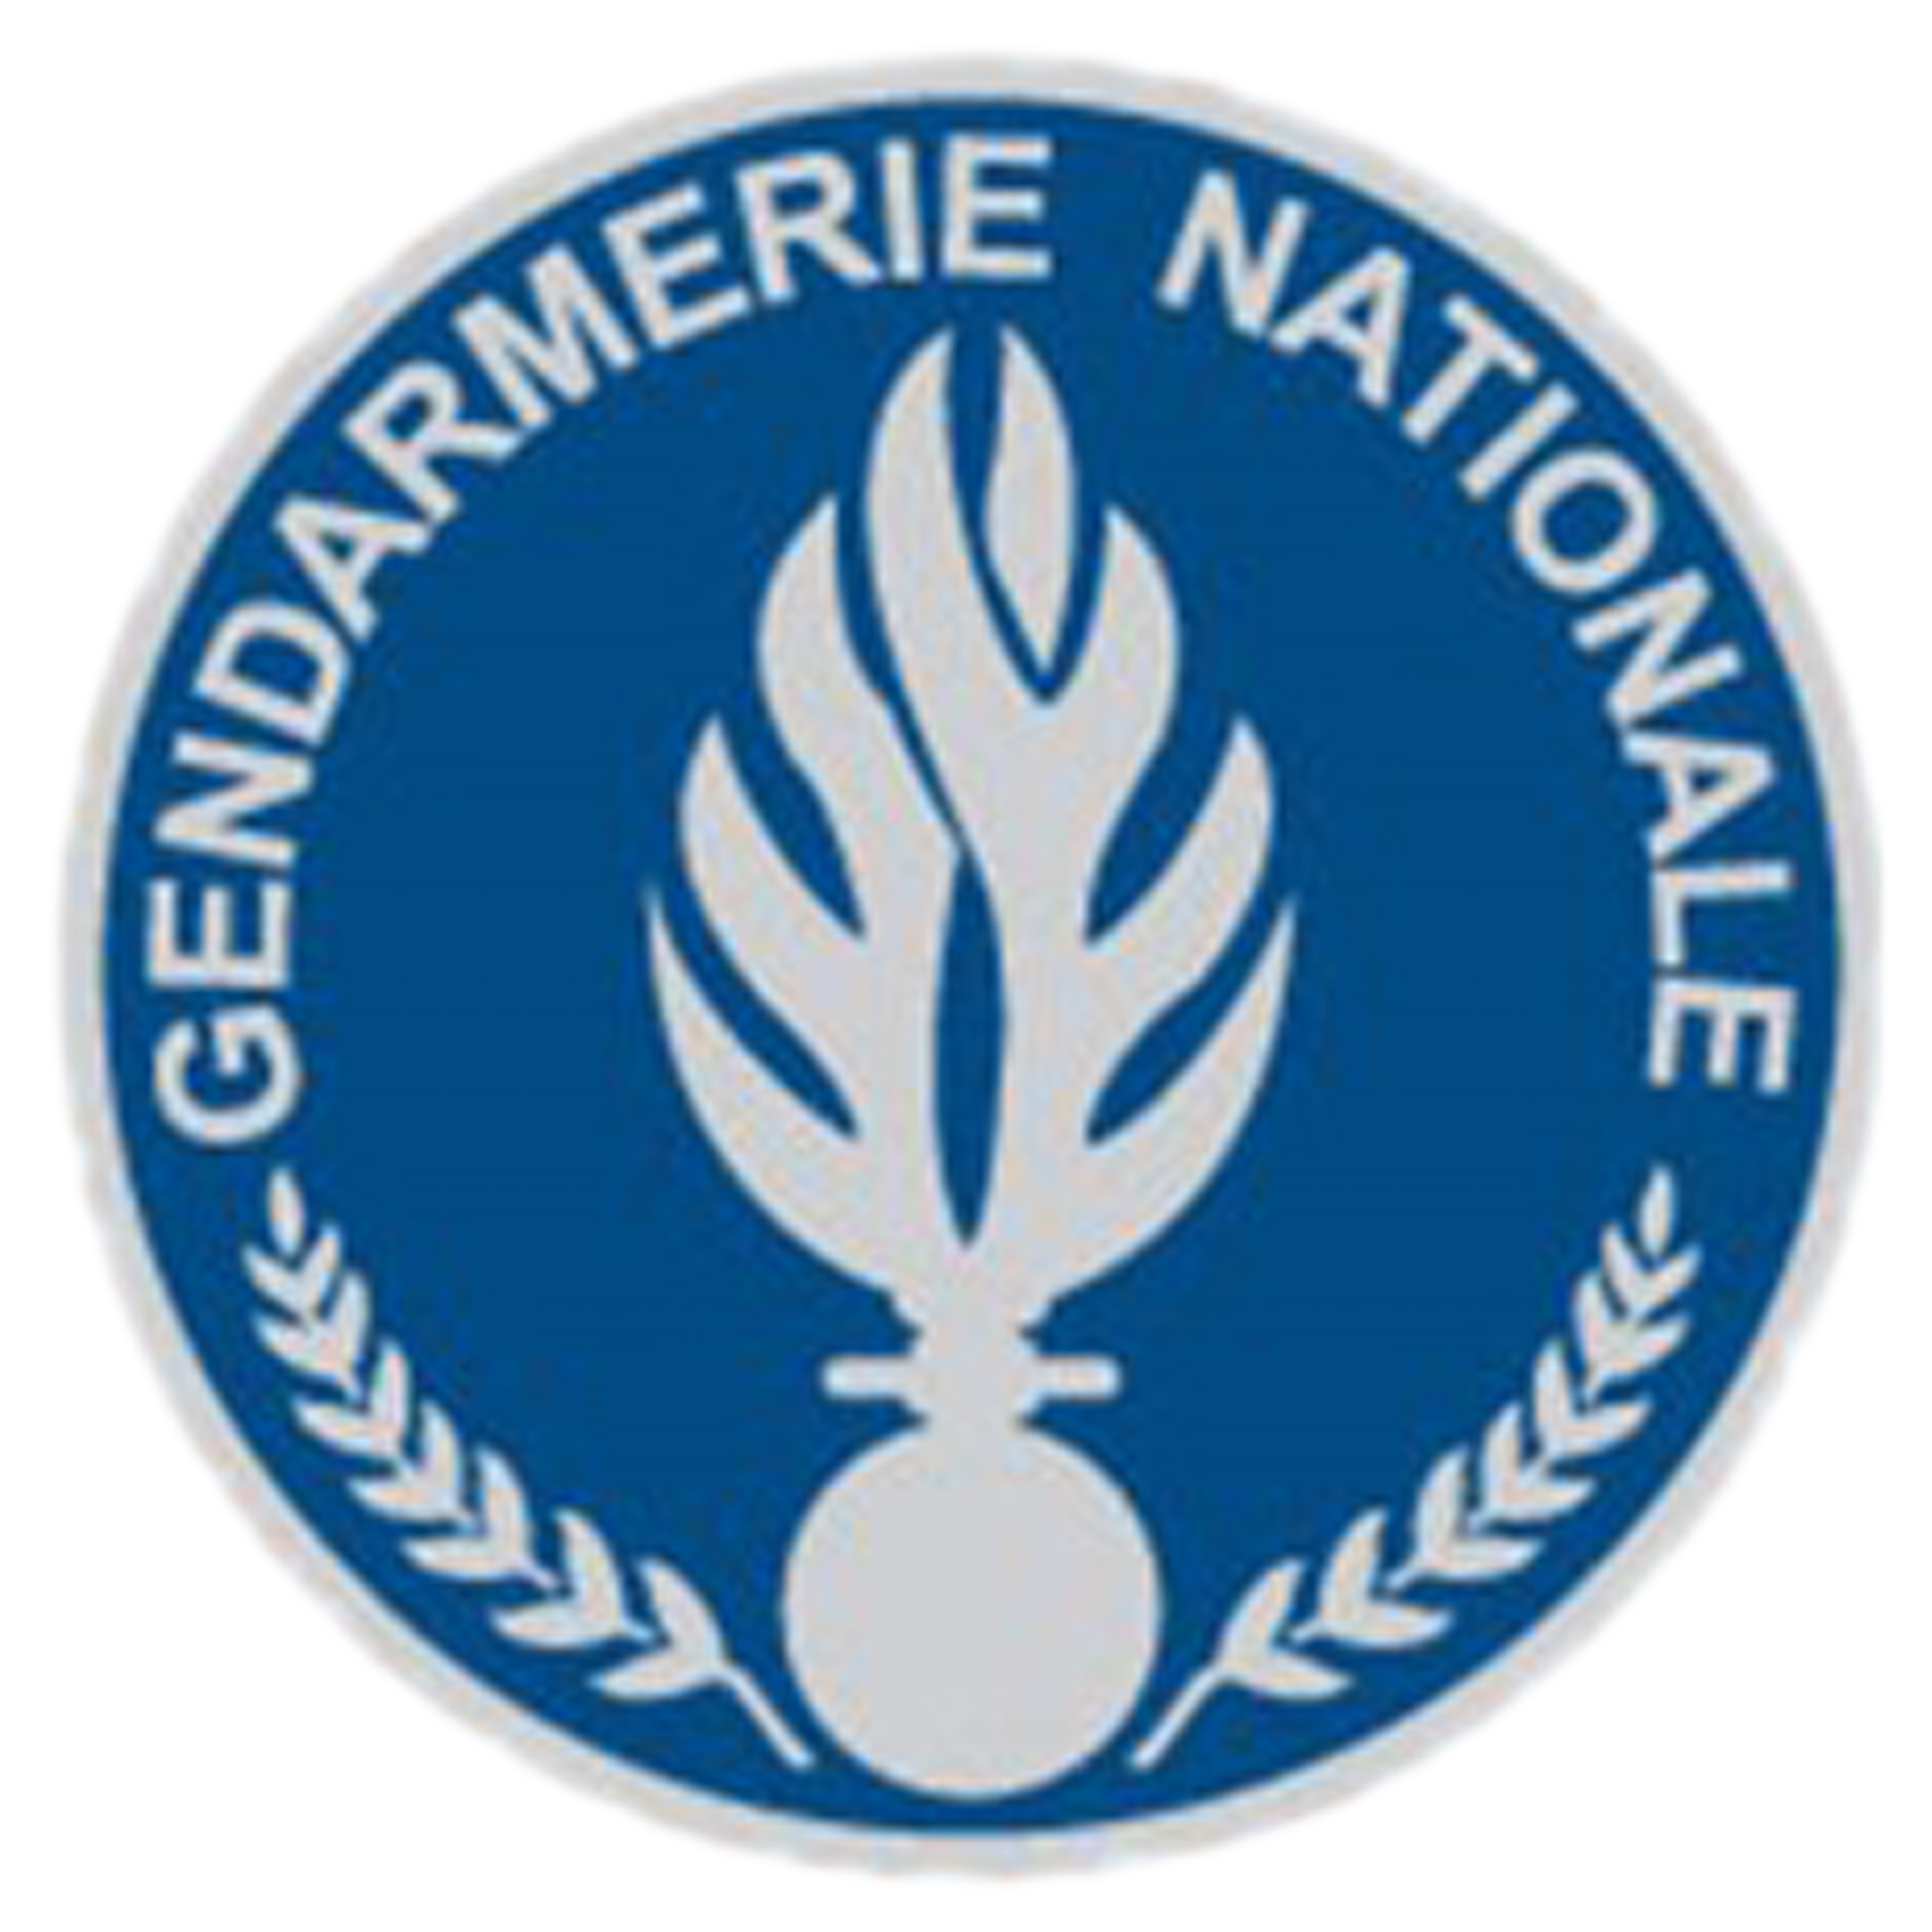 Comprar navaja K25 19592 Gendarmerie départementale en ASMC